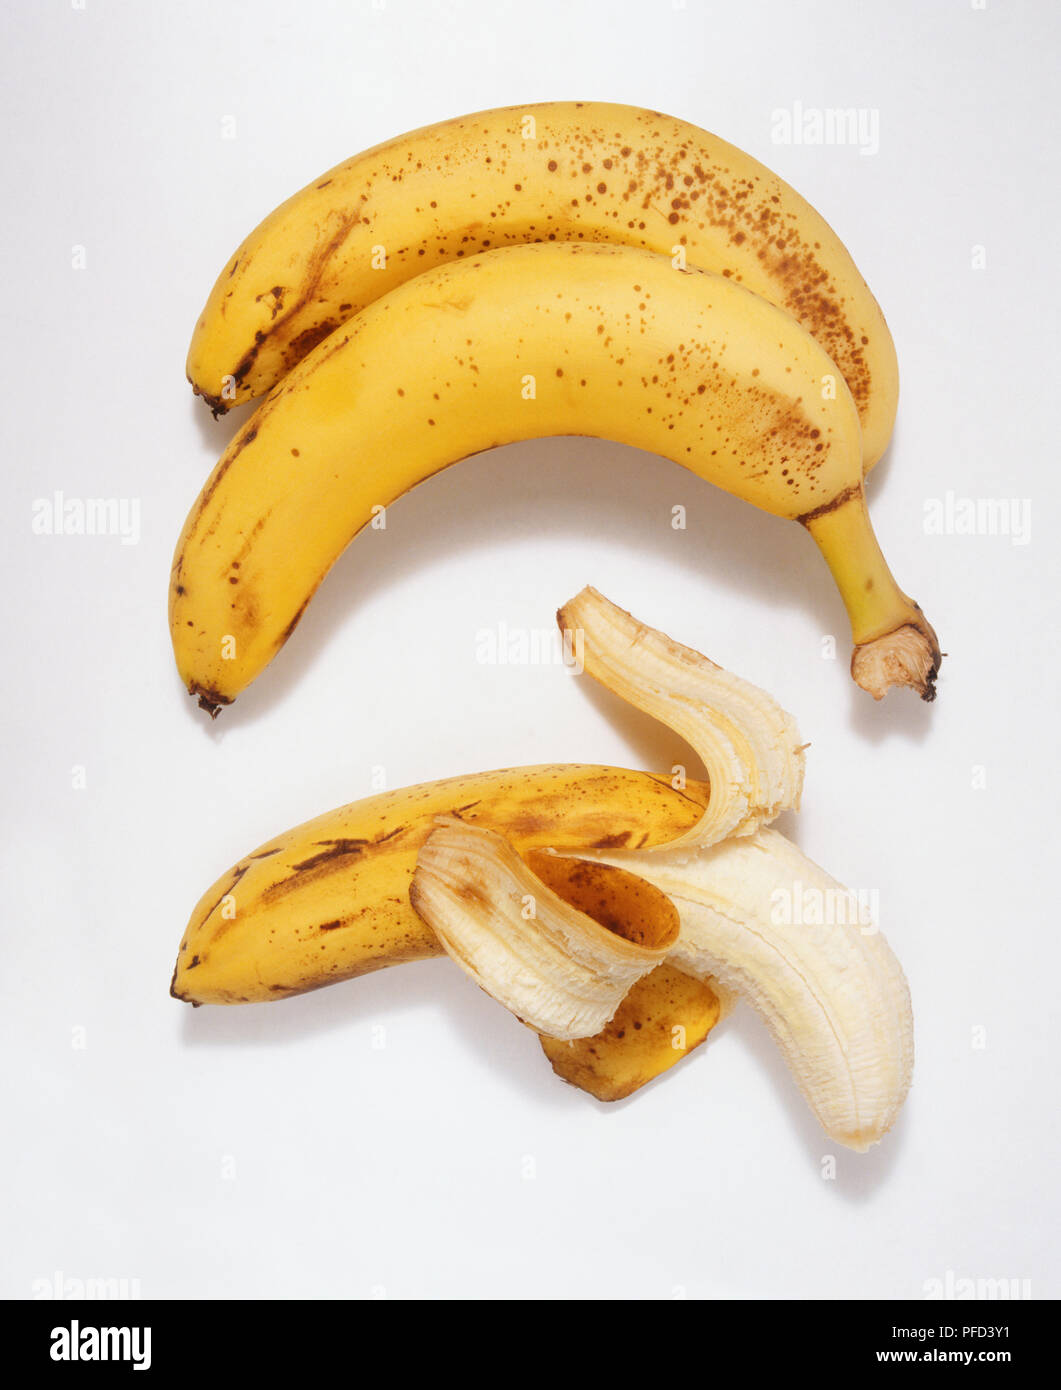 Half-peeled banana Stock Photo